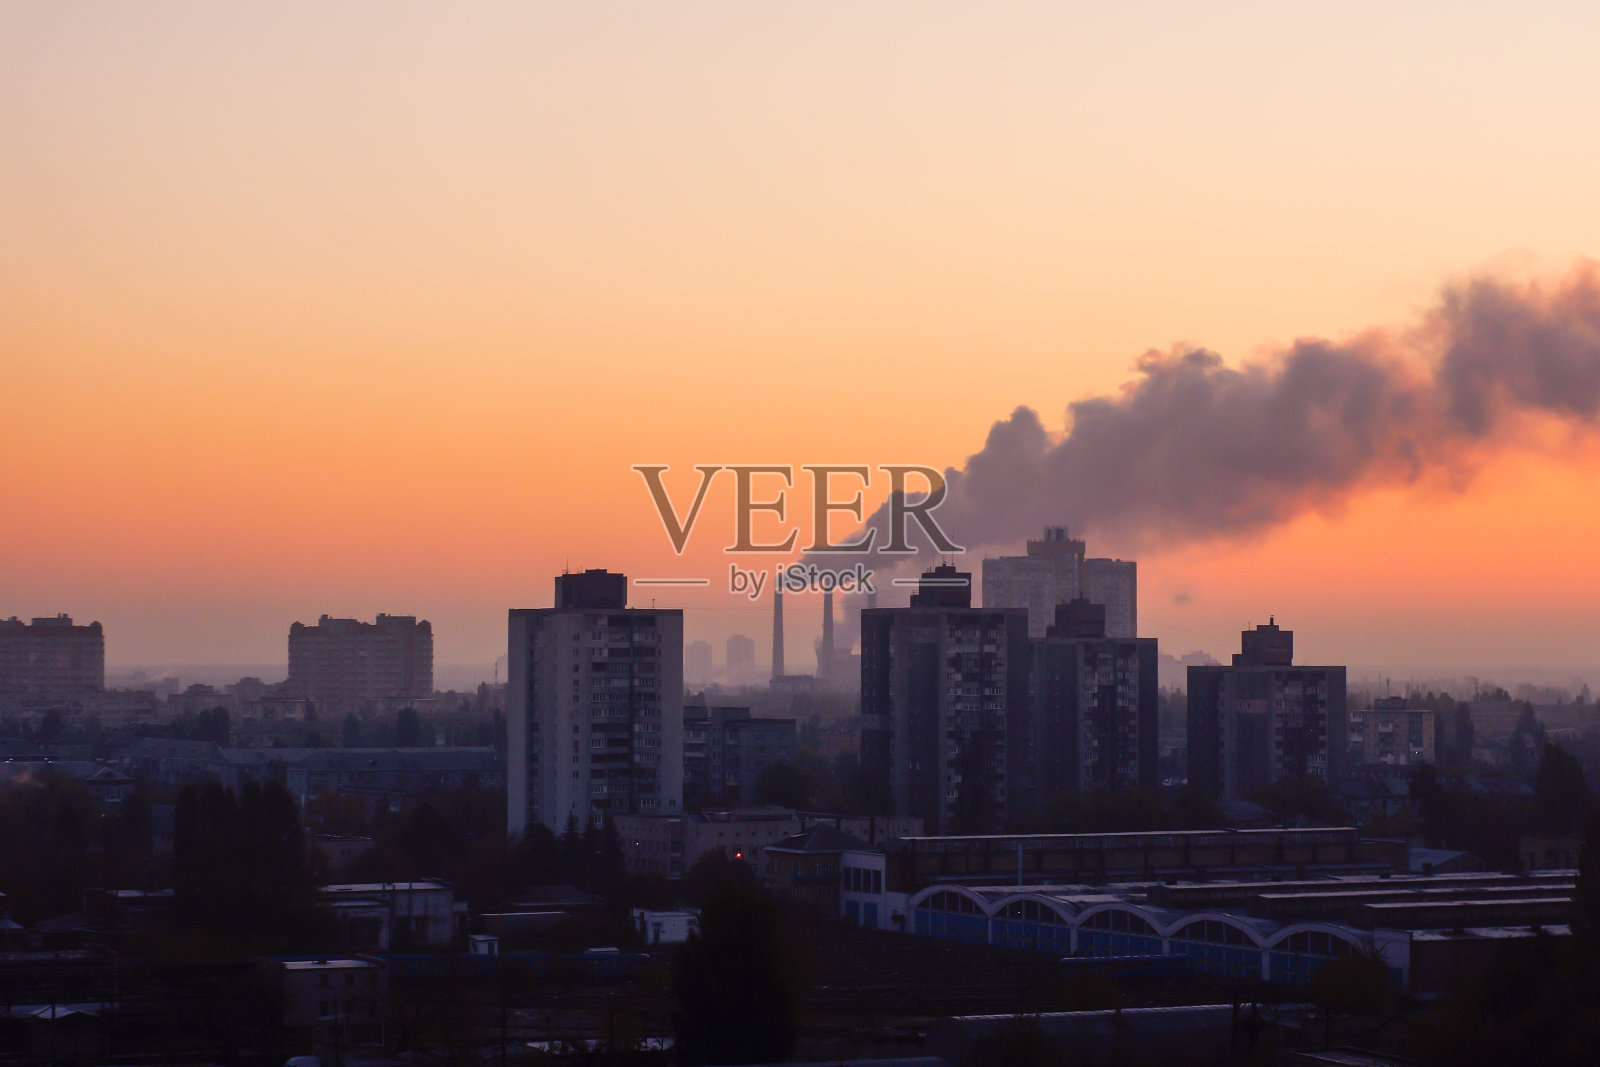 工厂的管道污染了夕阳下的空气，环境问题，烟囱里冒出的烟照片摄影图片